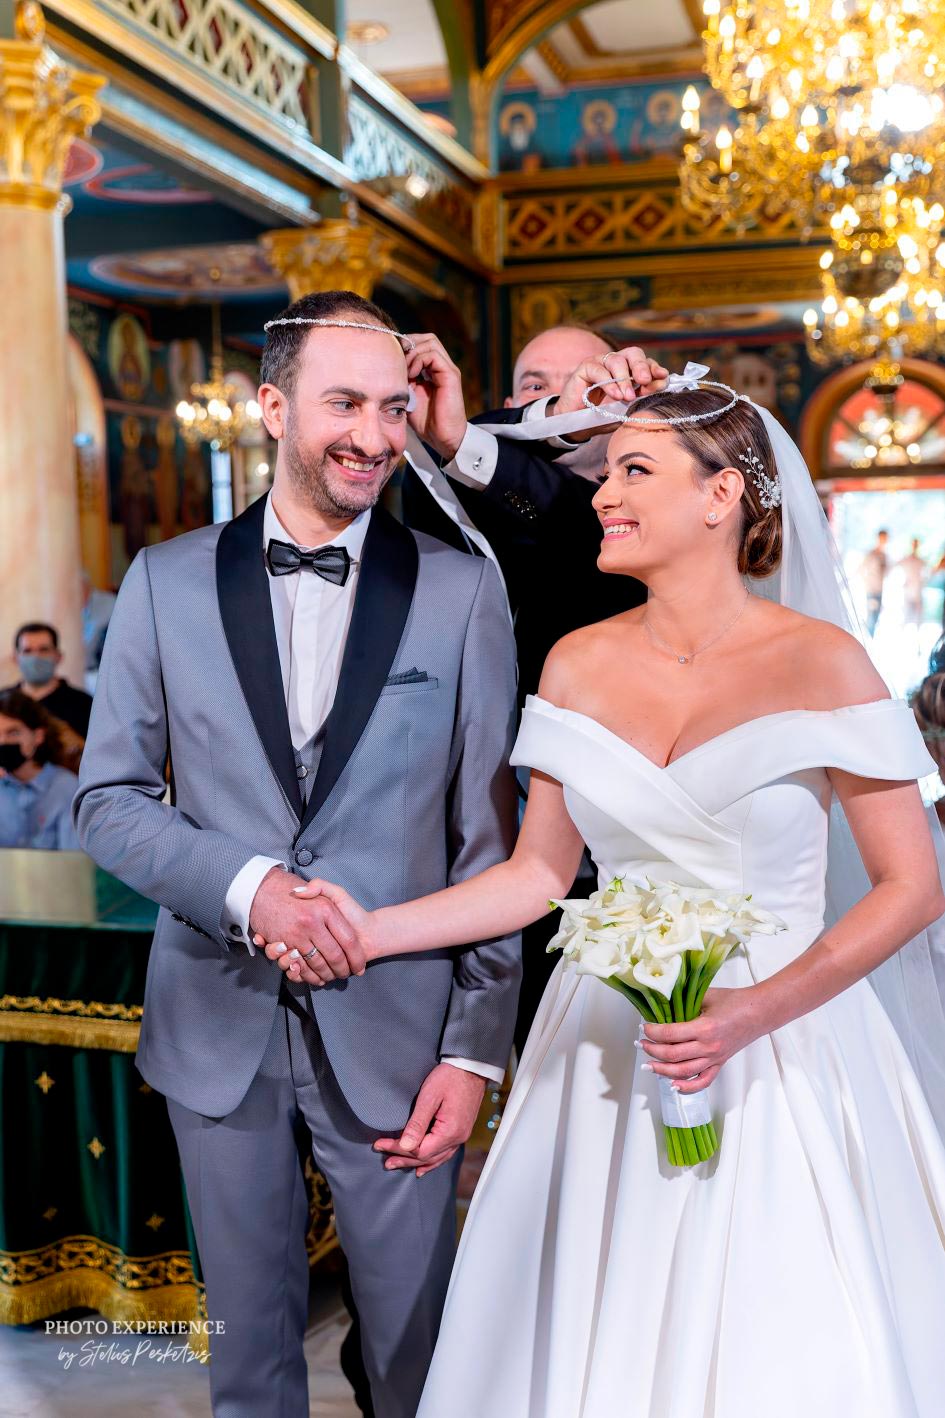 Βασίλης & Έλενα - Θεσσαλονίκη : Real Wedding by Photo Experience Stelios Pesketzis